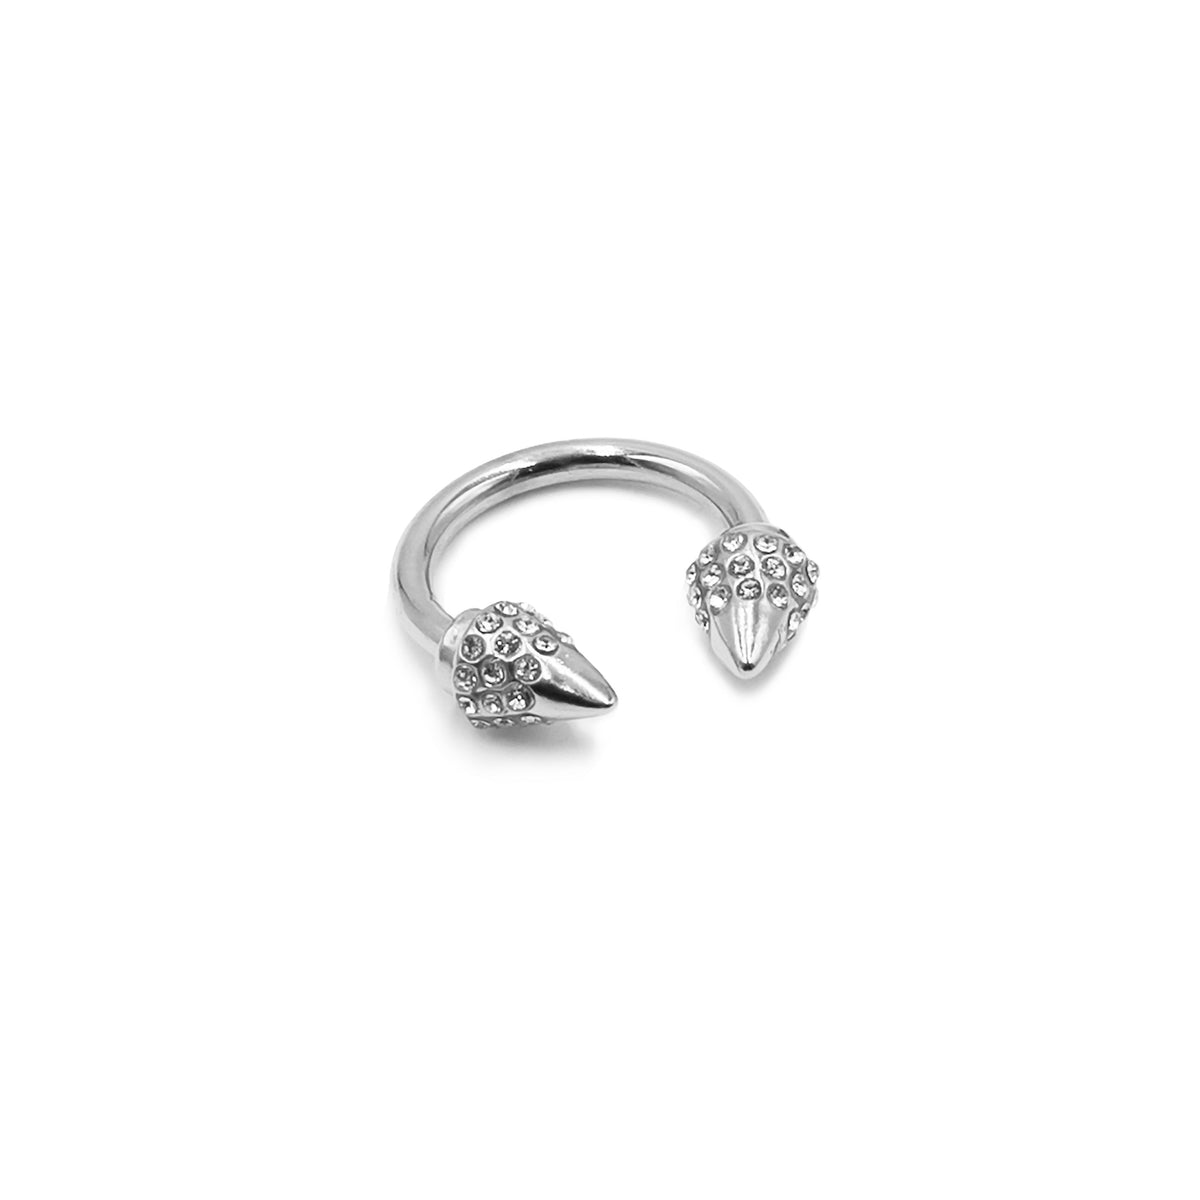 Collezione Spike - Anello in argento Bling, gioielli di design per uomini e donne